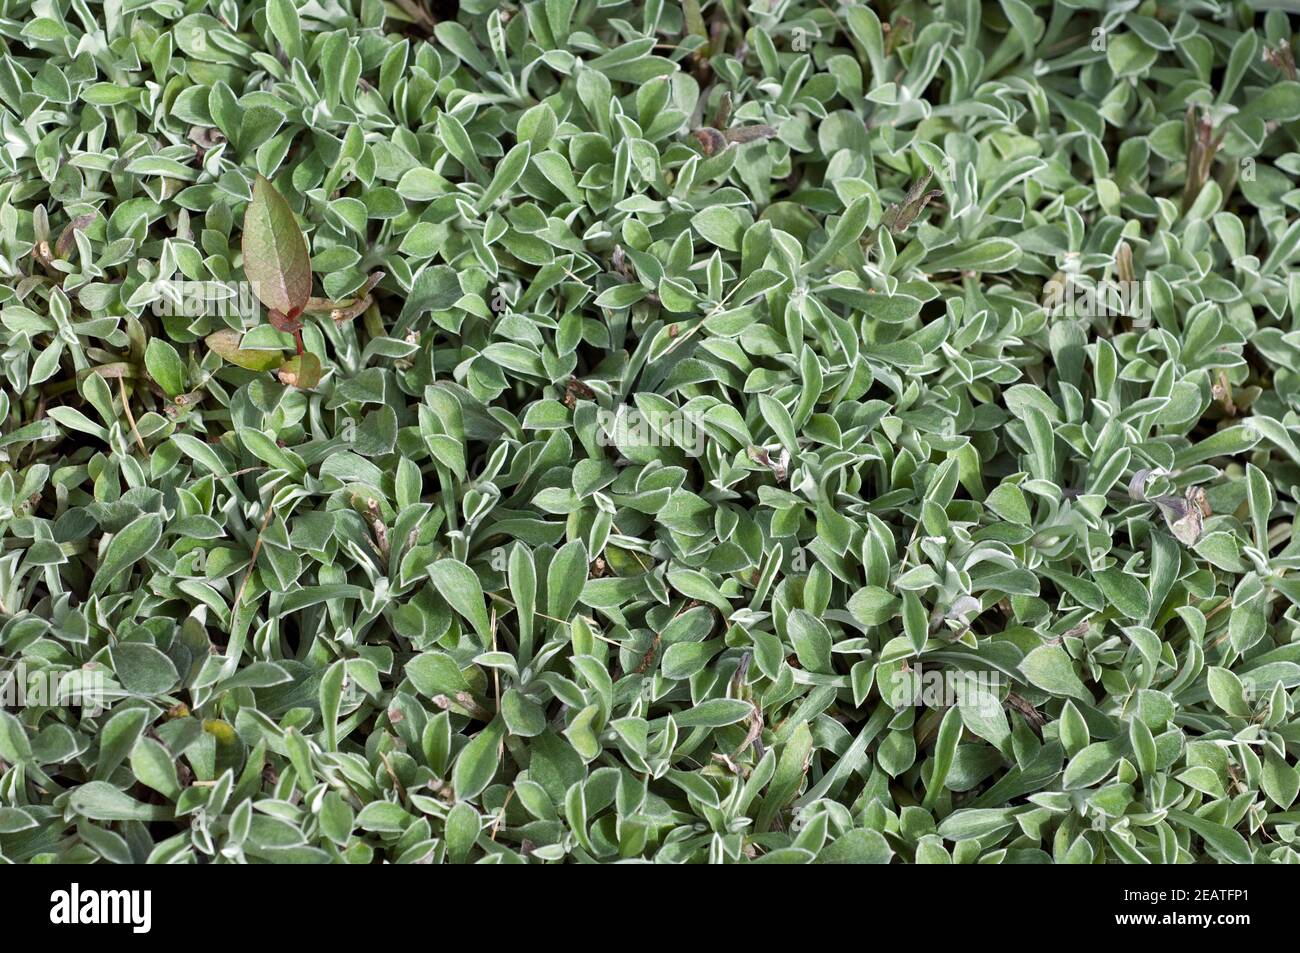 katzenpfoetchen, Antennaria dioica Stock Photo